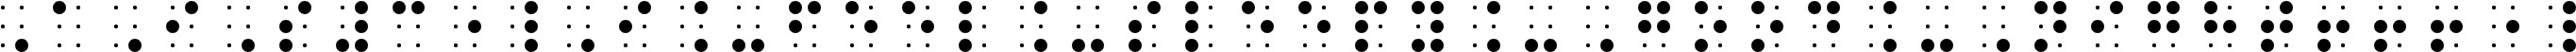 Piquero Braille